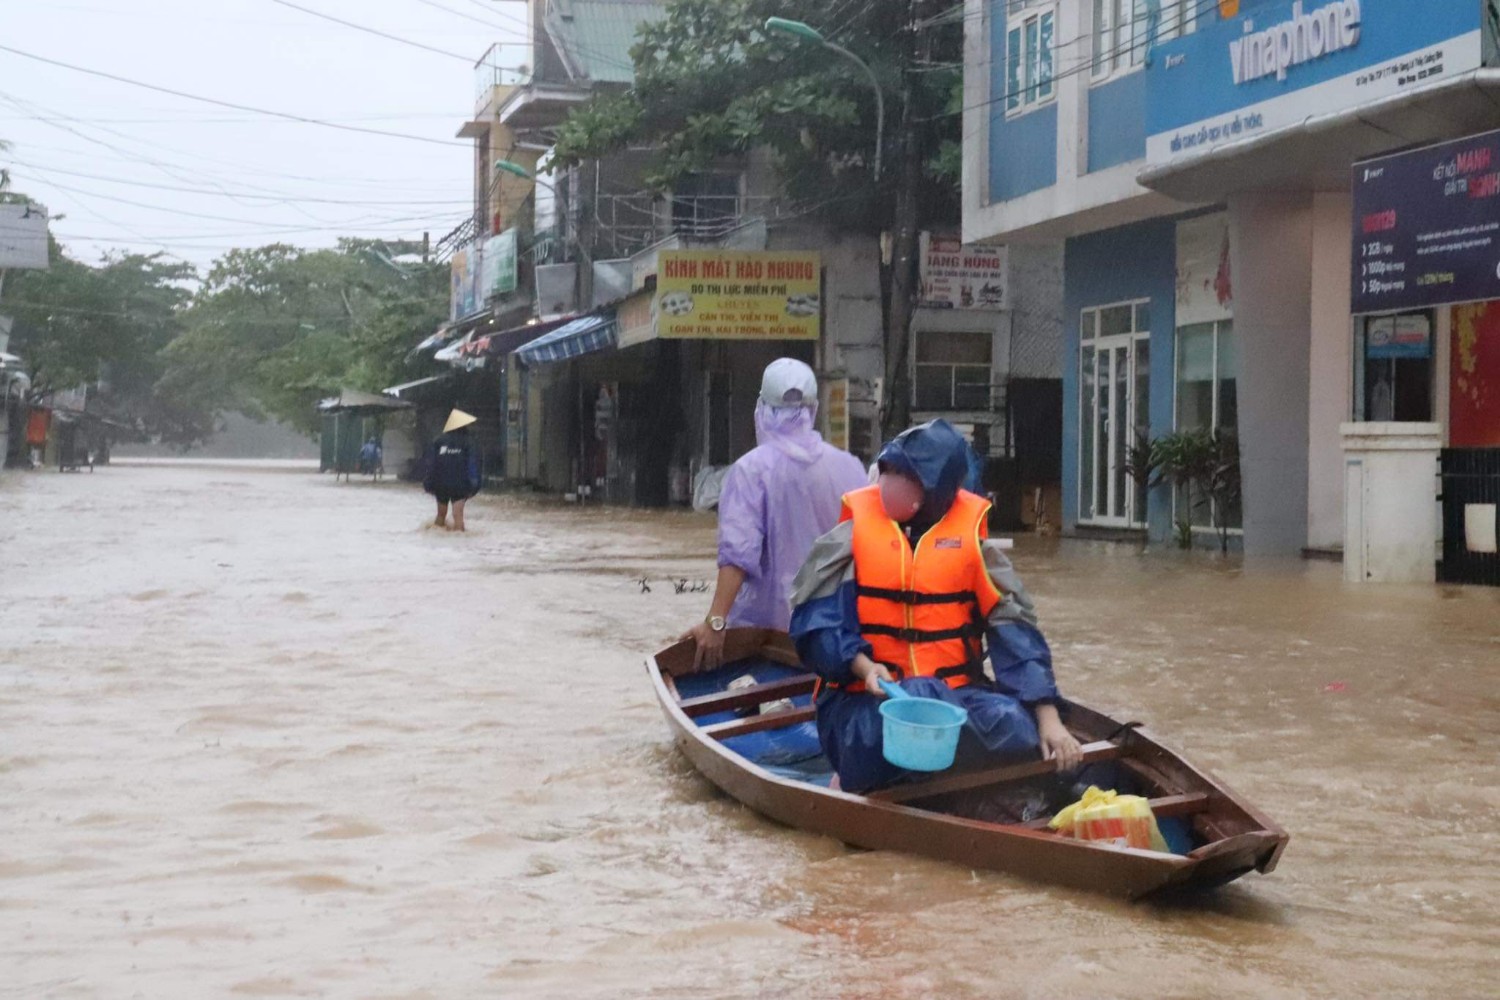 Thị trấn Kiến Giang có địa hình thấp trũng, nằm sát sông nên luôn bị ngập lụt khi có mưa kéo dài